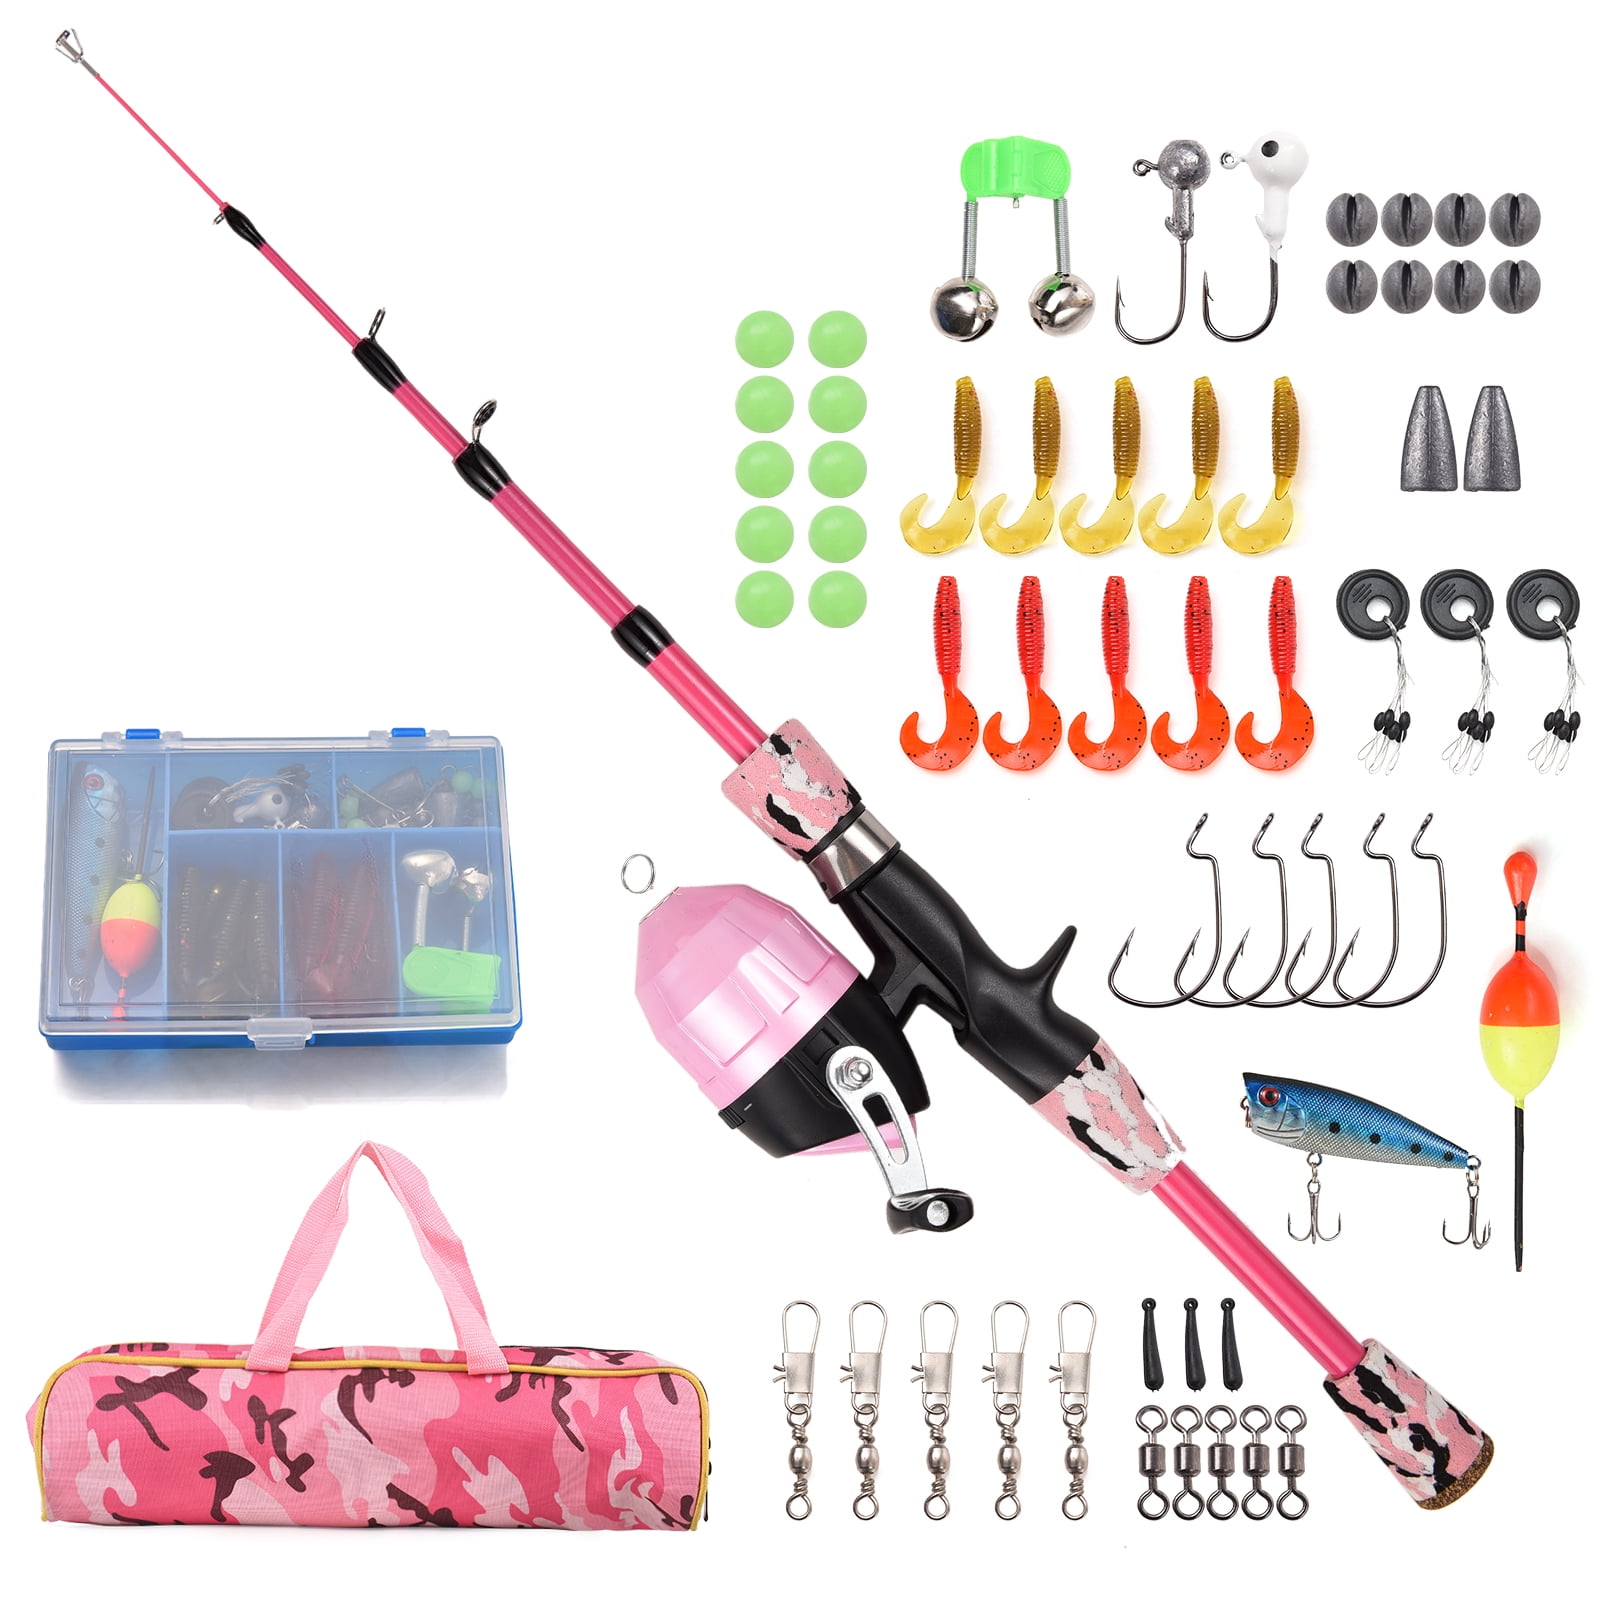 Best Portable Fishing Rod  Maple Portable Fishing Pole Kit